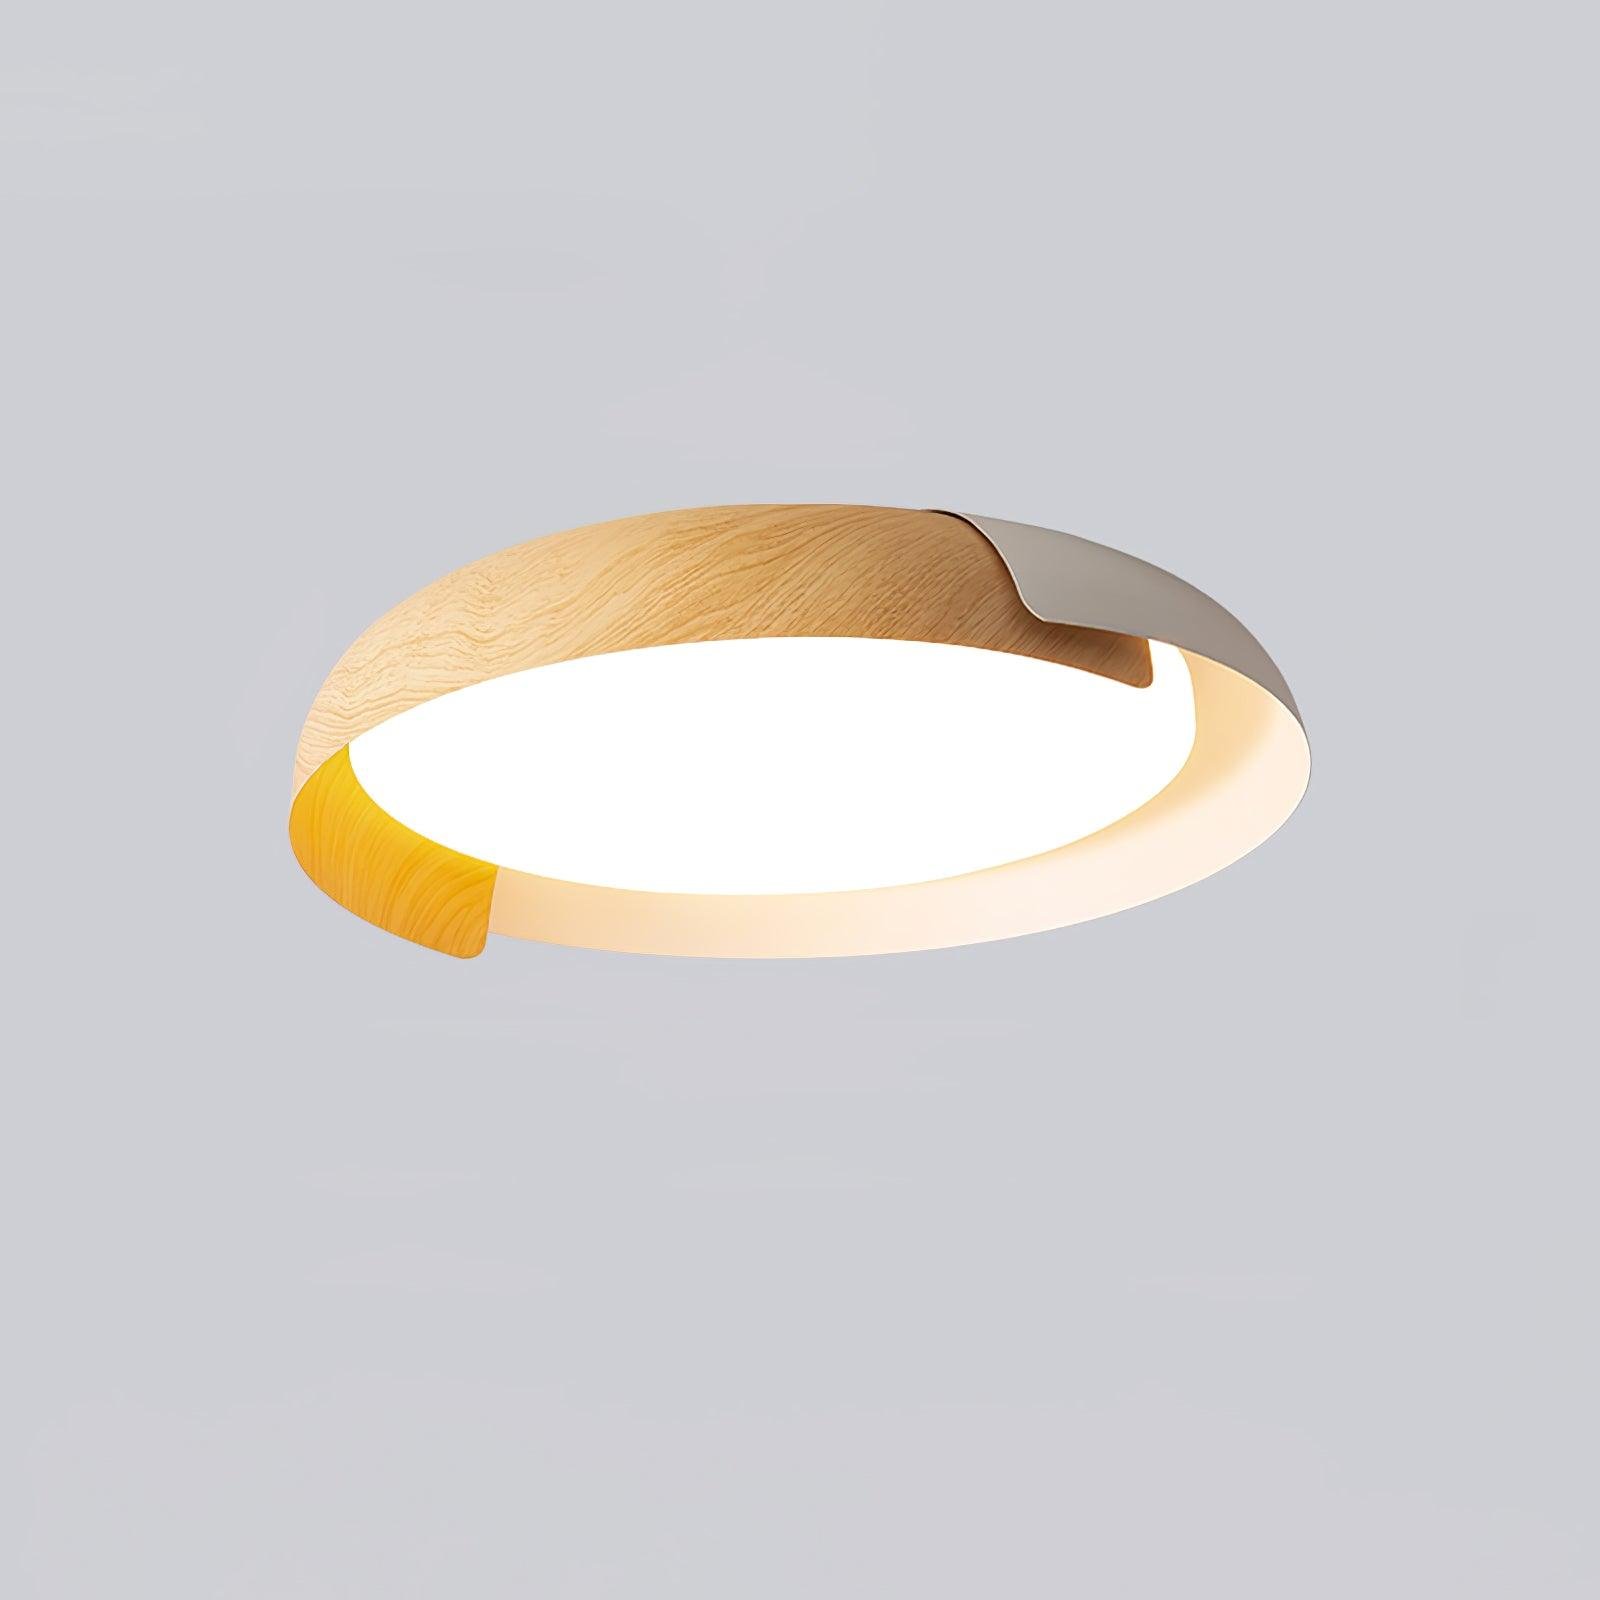 Vikaey Ceiling Light in White/Light Wood, Cool Light - Diameter 18.1" x Height 3.9" (46cm x 10cm)